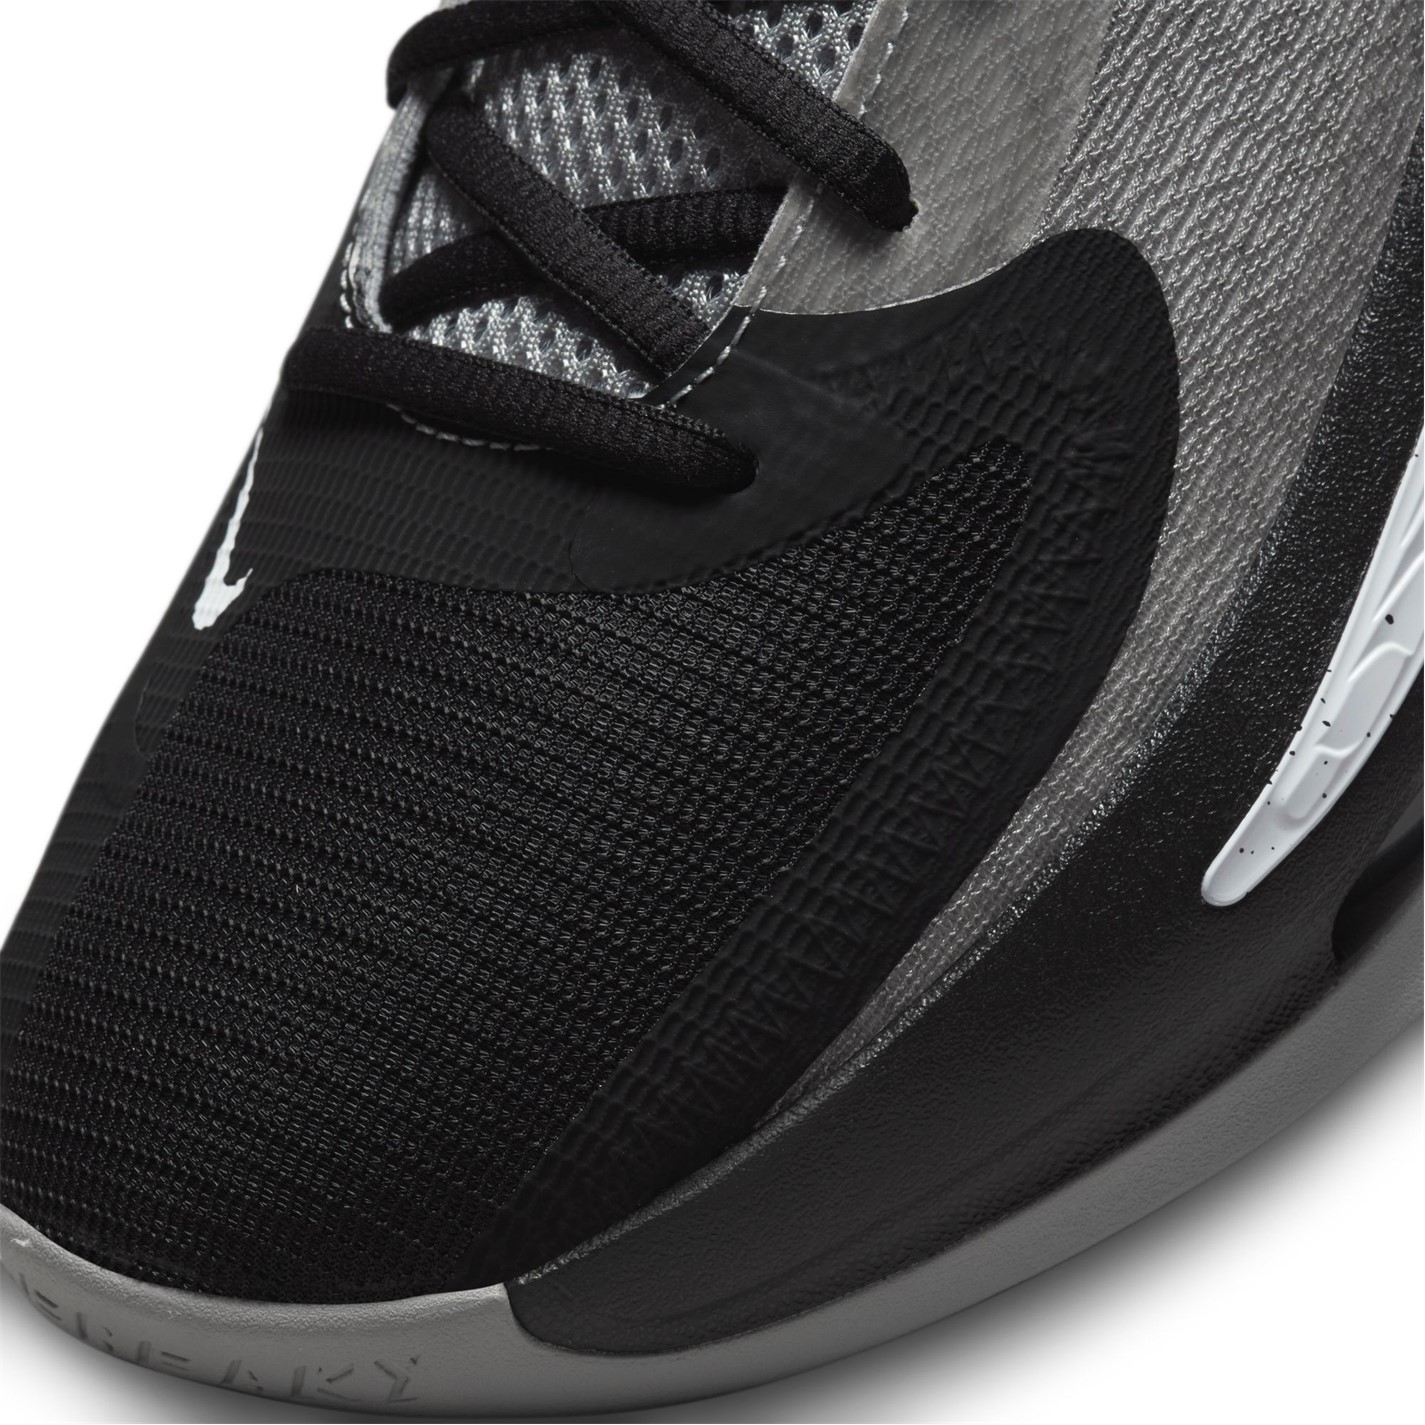 Adidasi pentru Baschet Nike Freak 4 negru alb gri